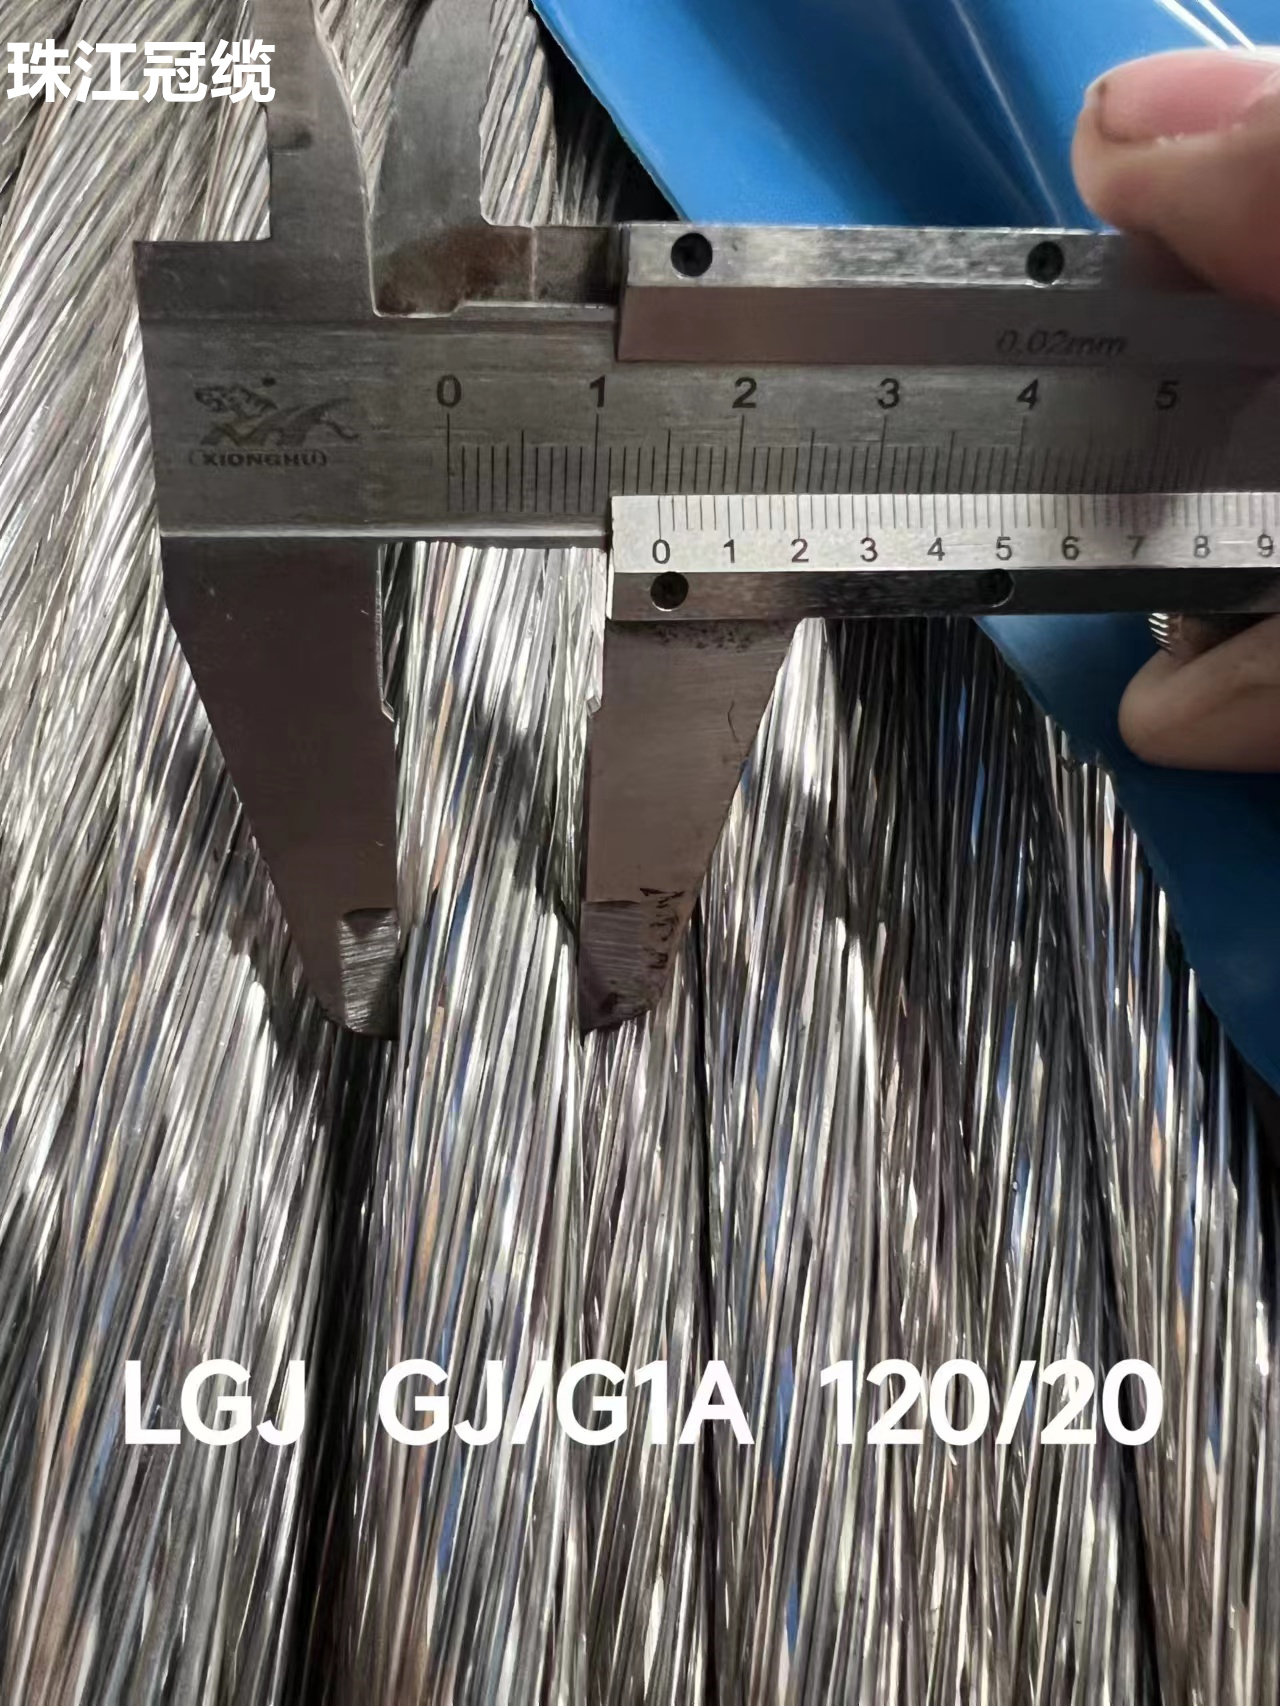 广东珠江冠缆LGJ GJ/G1A 120/20 钢芯铝绞线